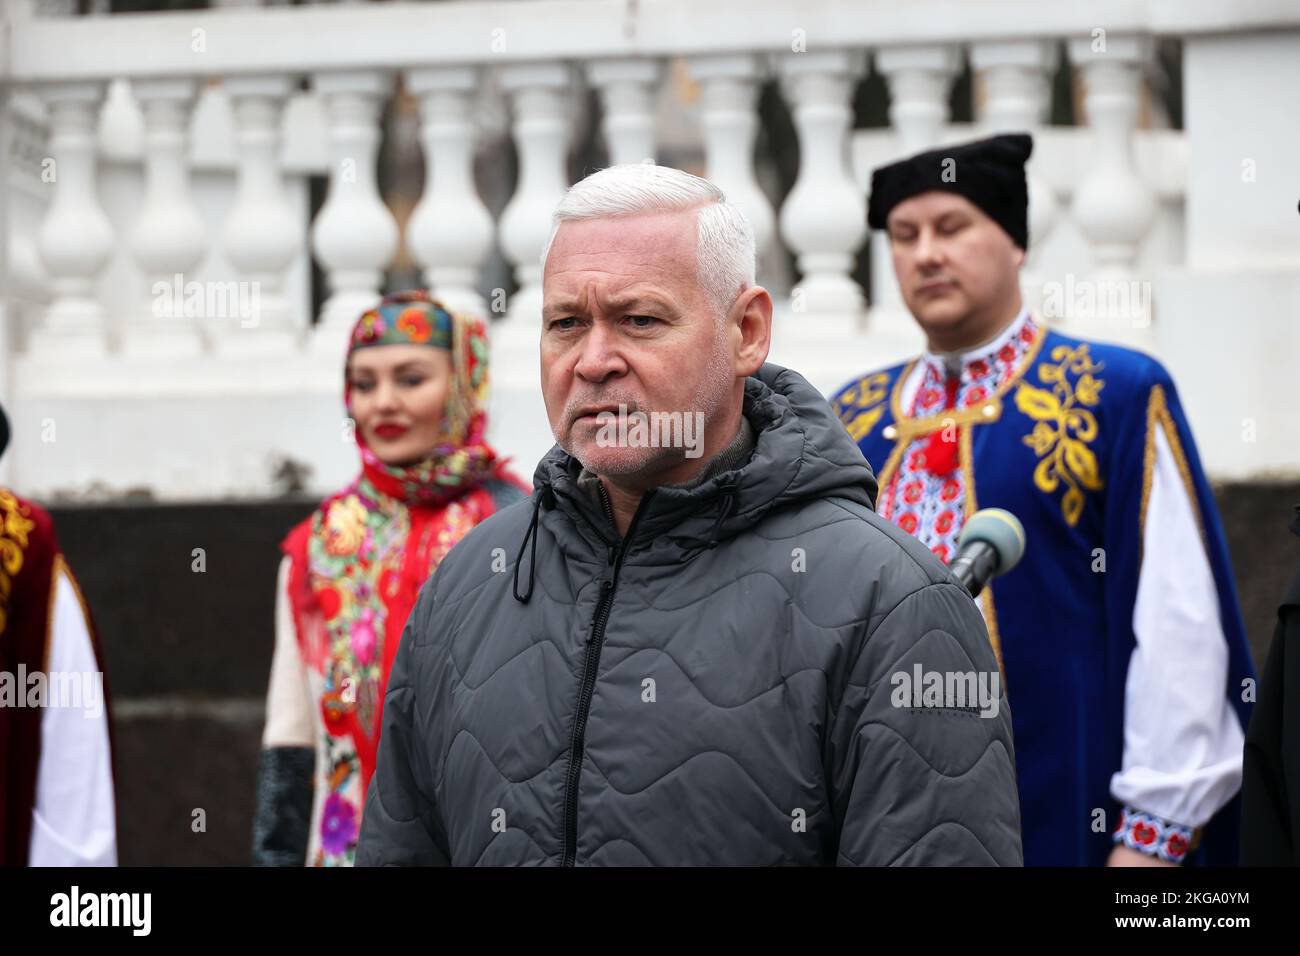 KHARKIV, UCRAINA - 21 NOVEMBRE 2022 - il sindaco di Kharkiv Ihor Terekhov parla durante la presentazione della medaglia commemorativa 'Kharkiv - Città degli Eroi' nel giorno della dignità e della libertà, Kharkiv, nel nord-est dell'Ucraina. Foto Stock